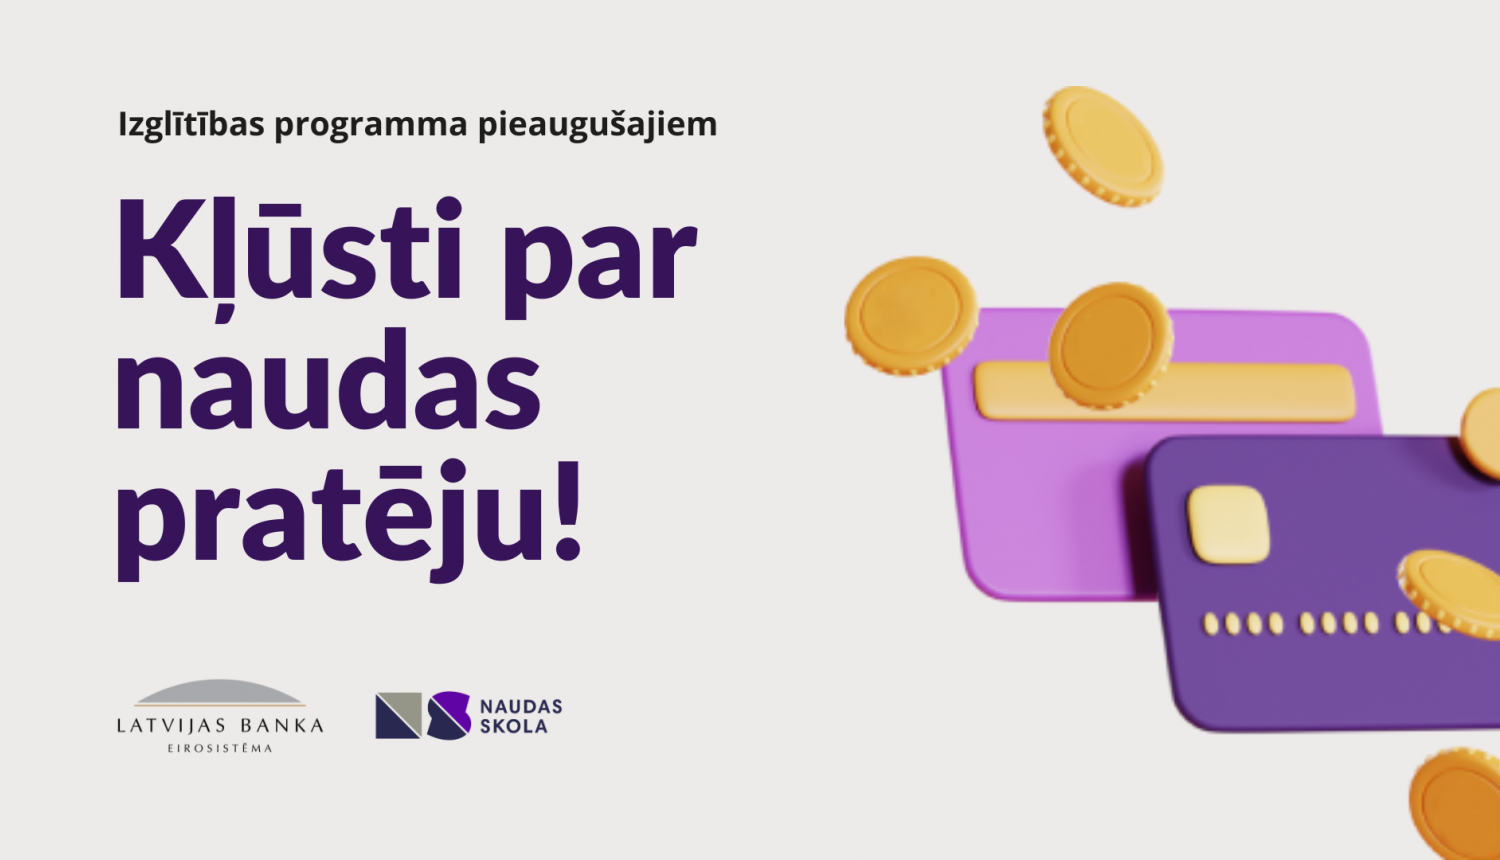 Preiļu novada Izglītības pārvalde sadarbībā ar IZM un Latvijas Banku piedāvā neformālās izglītības programmu “Kļūsti par naudas pratēju!”